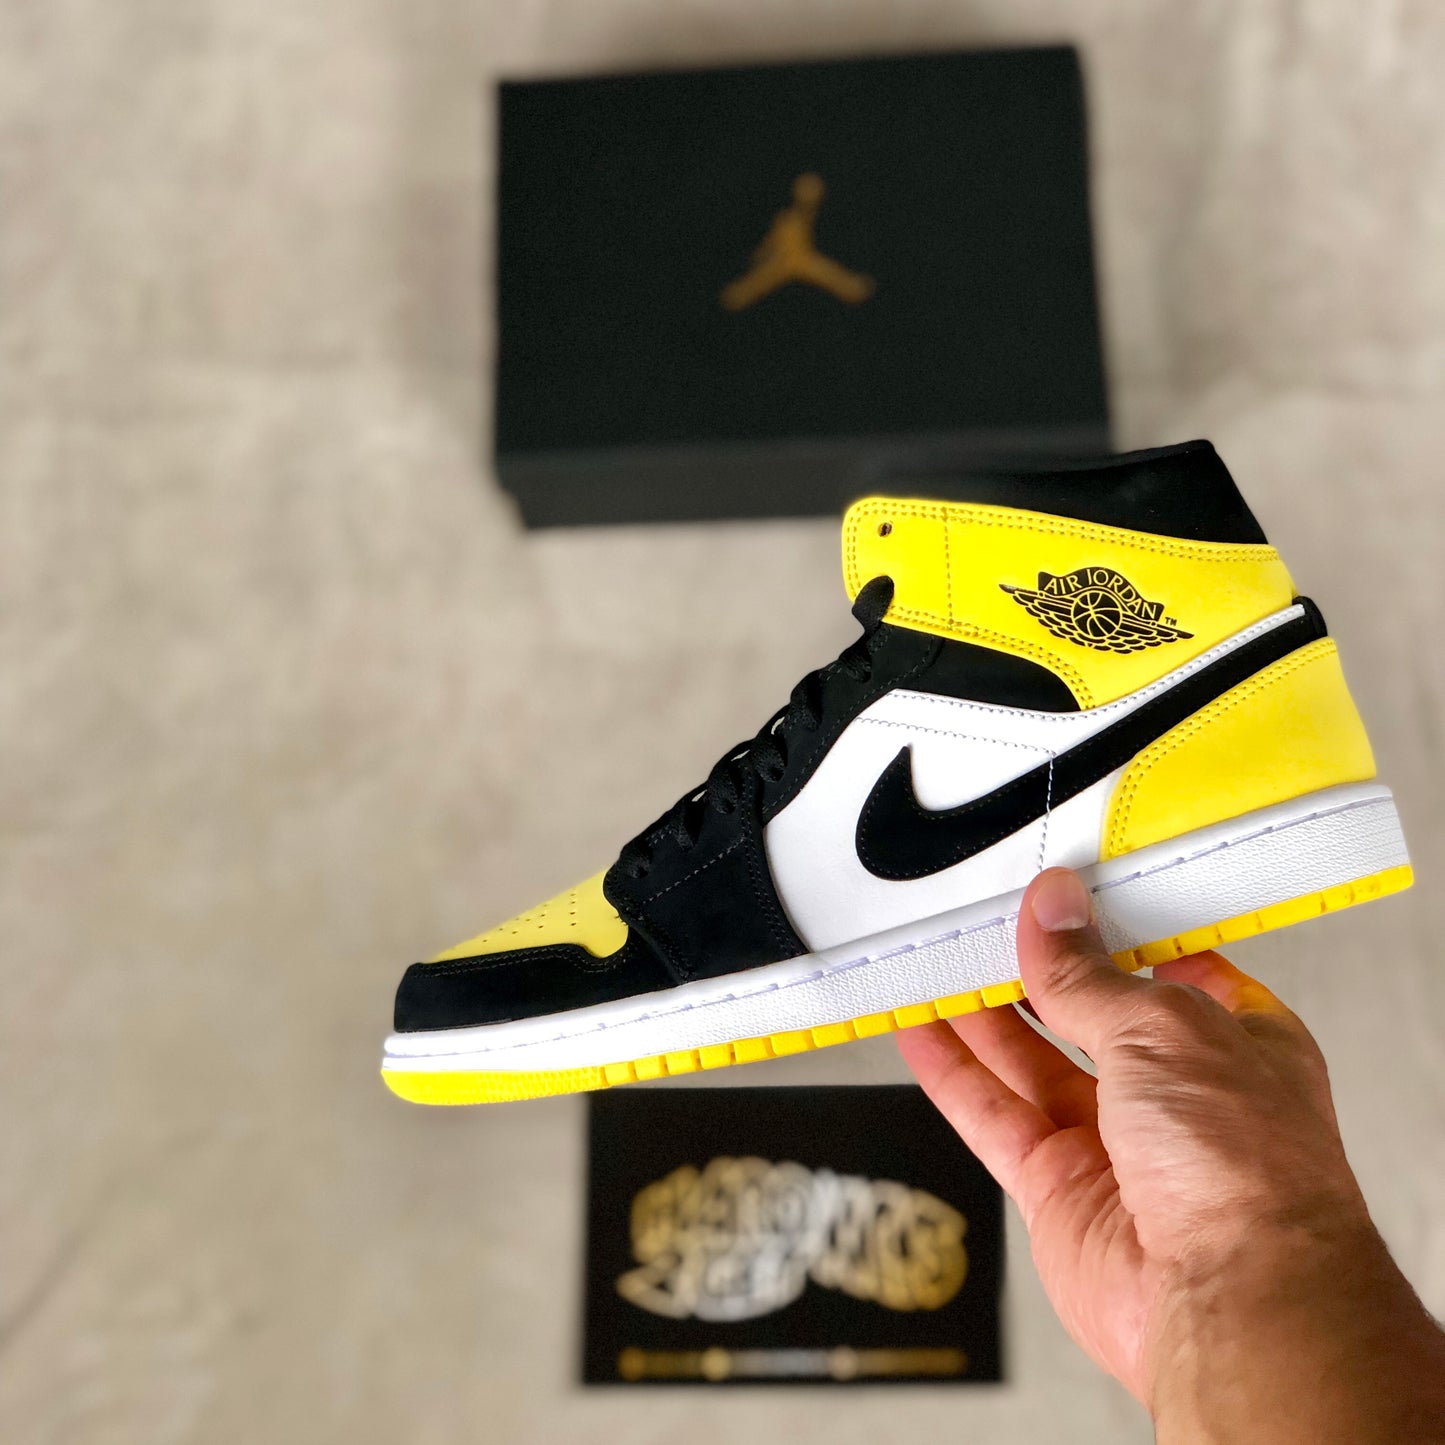 Air Jordan 1 Mid SE - Yellow Toe